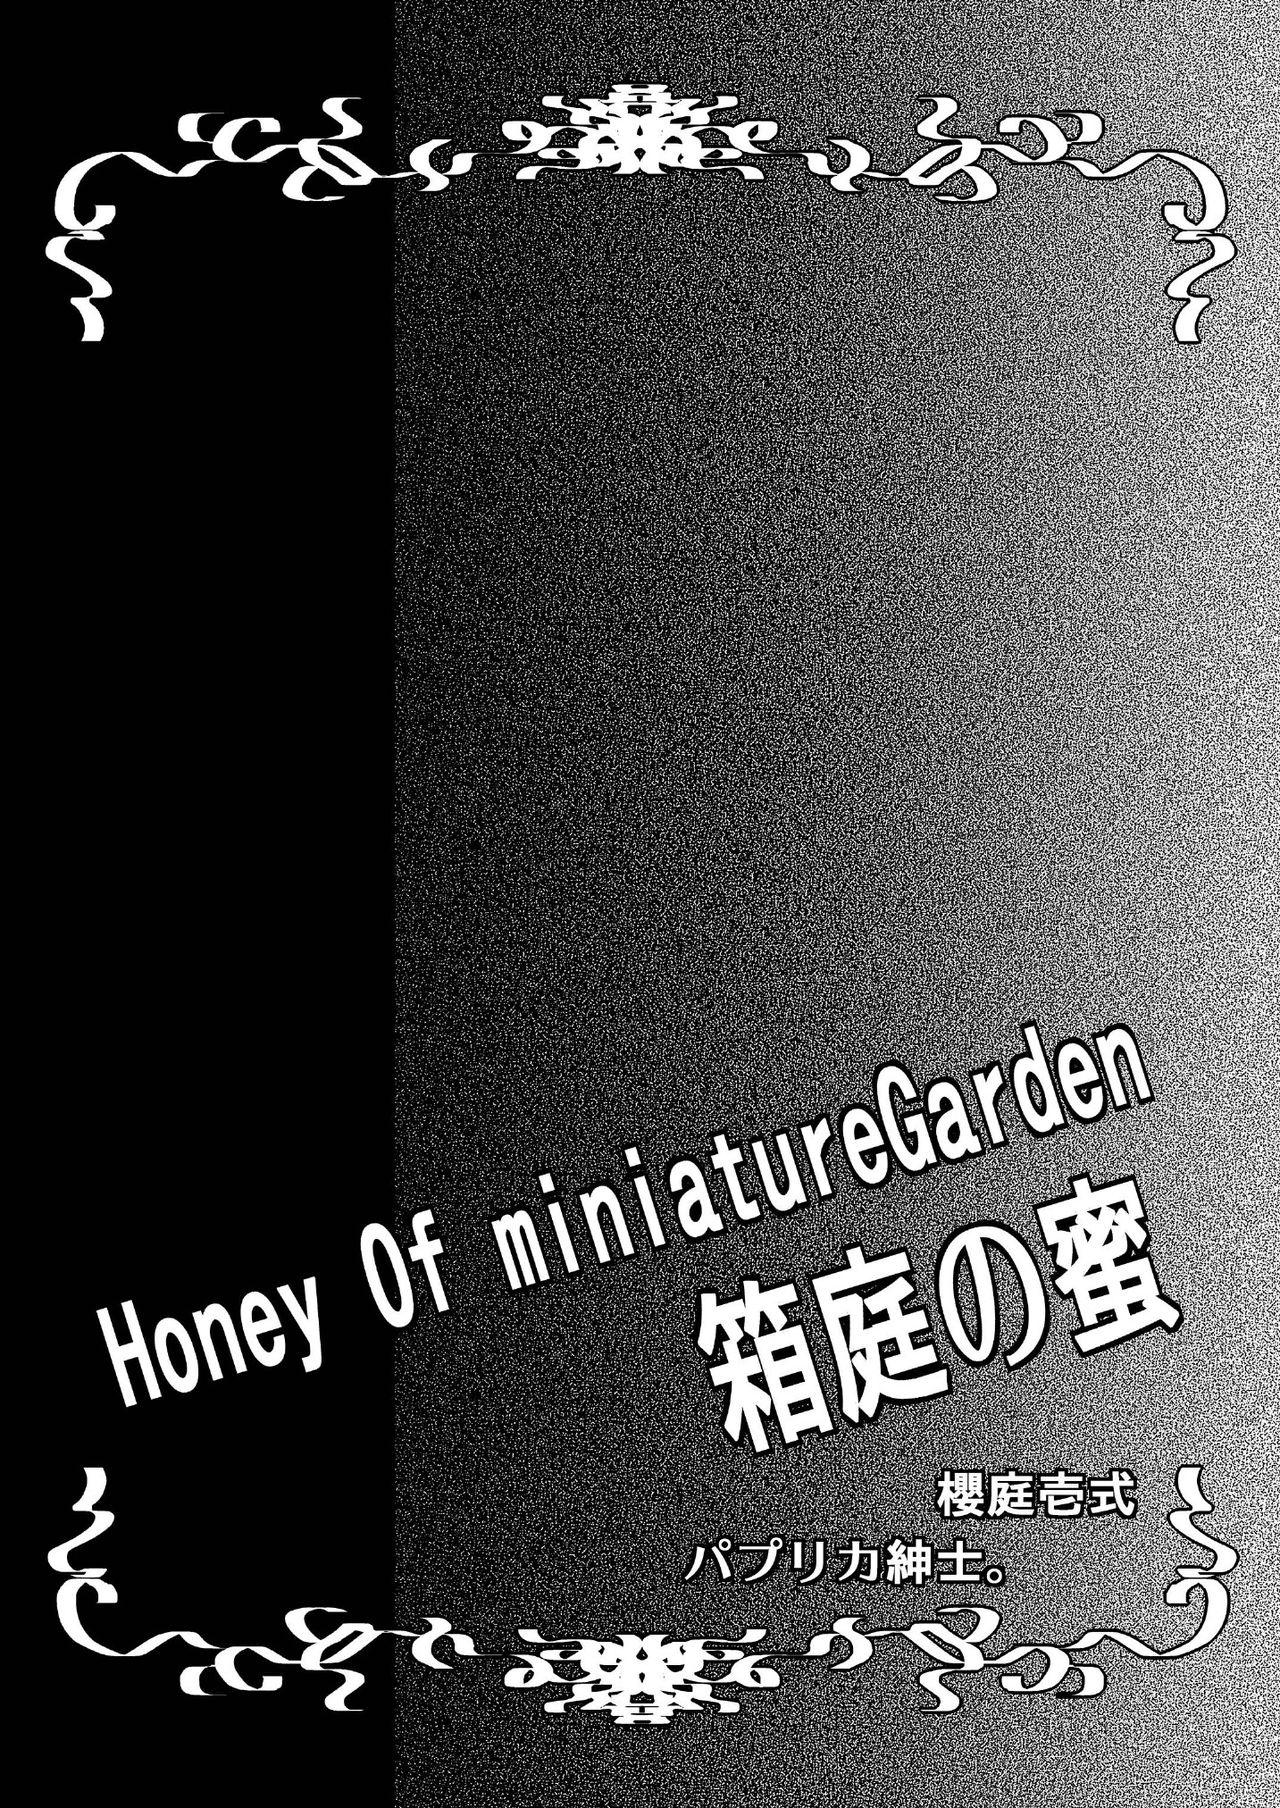 Honey Of miniature Garden Hakoniwa no Mitsu 47